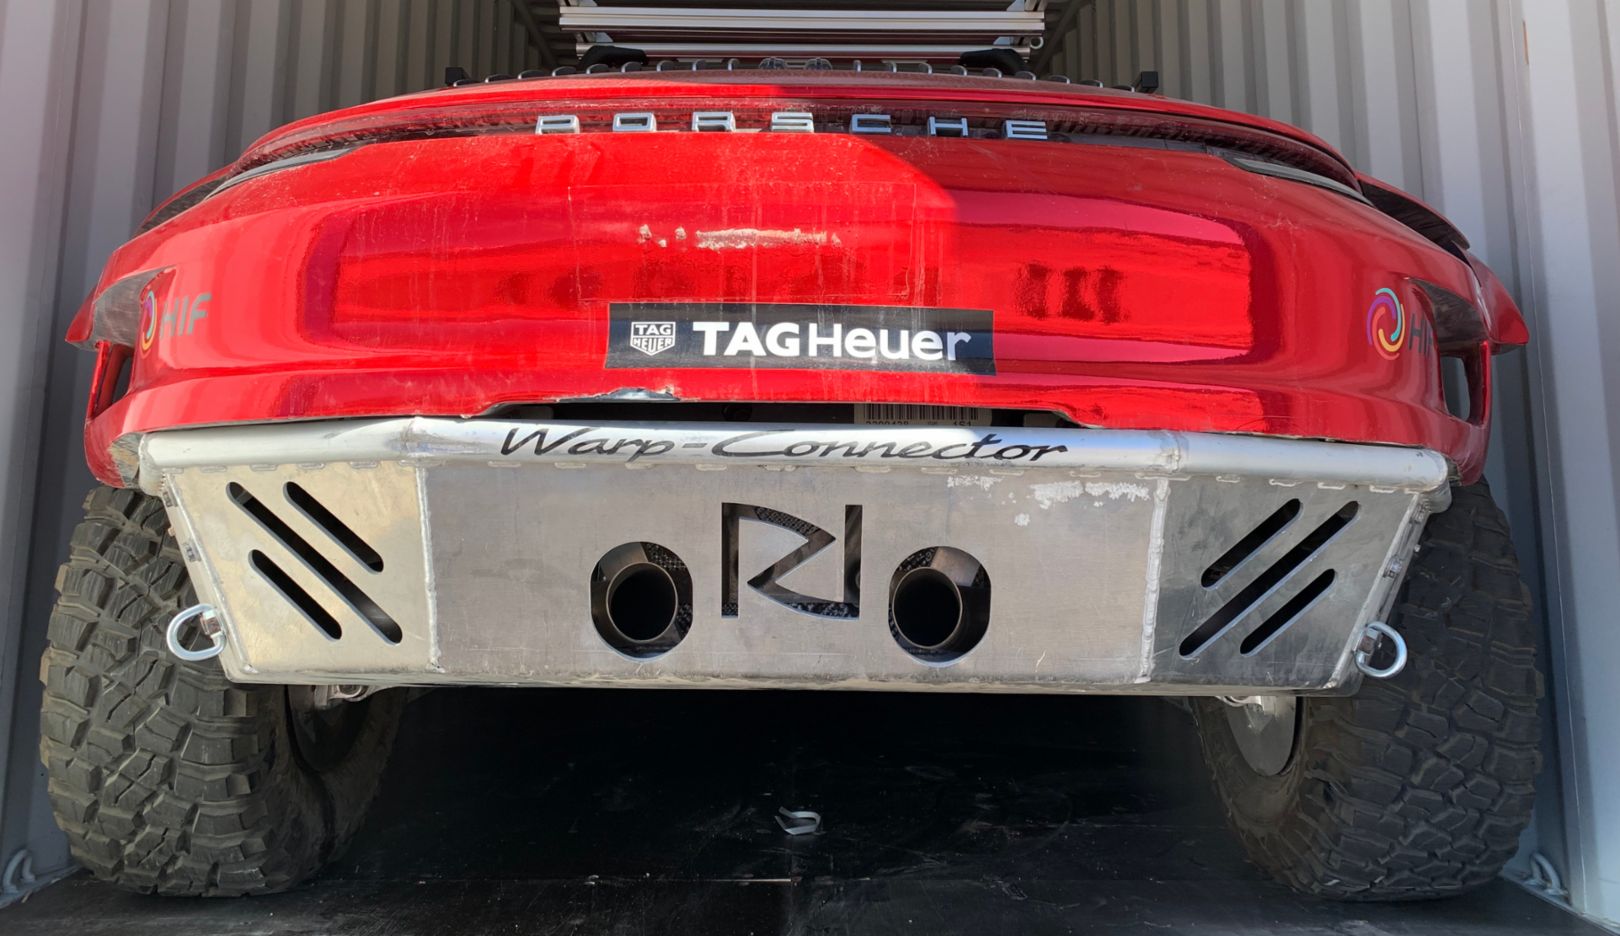 Vista trasera impresionante: la inscripción Warp Connector alude al sistema homónimo que se concibió originalmente para el Porsche 919 Hybrid (LMP1).